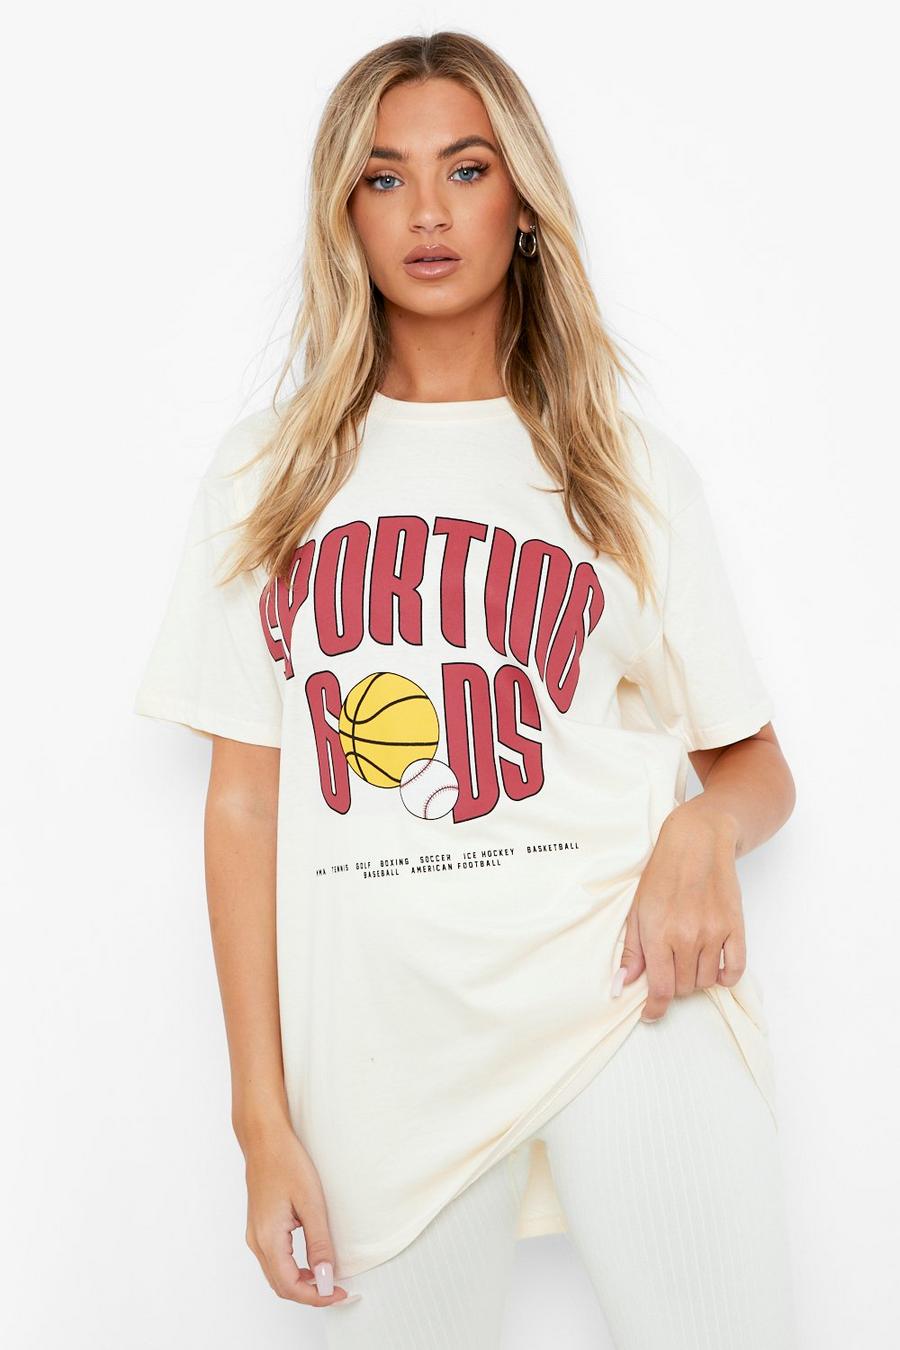 Restart Trend Chicago Bulls Printed Oversized T-Shirt